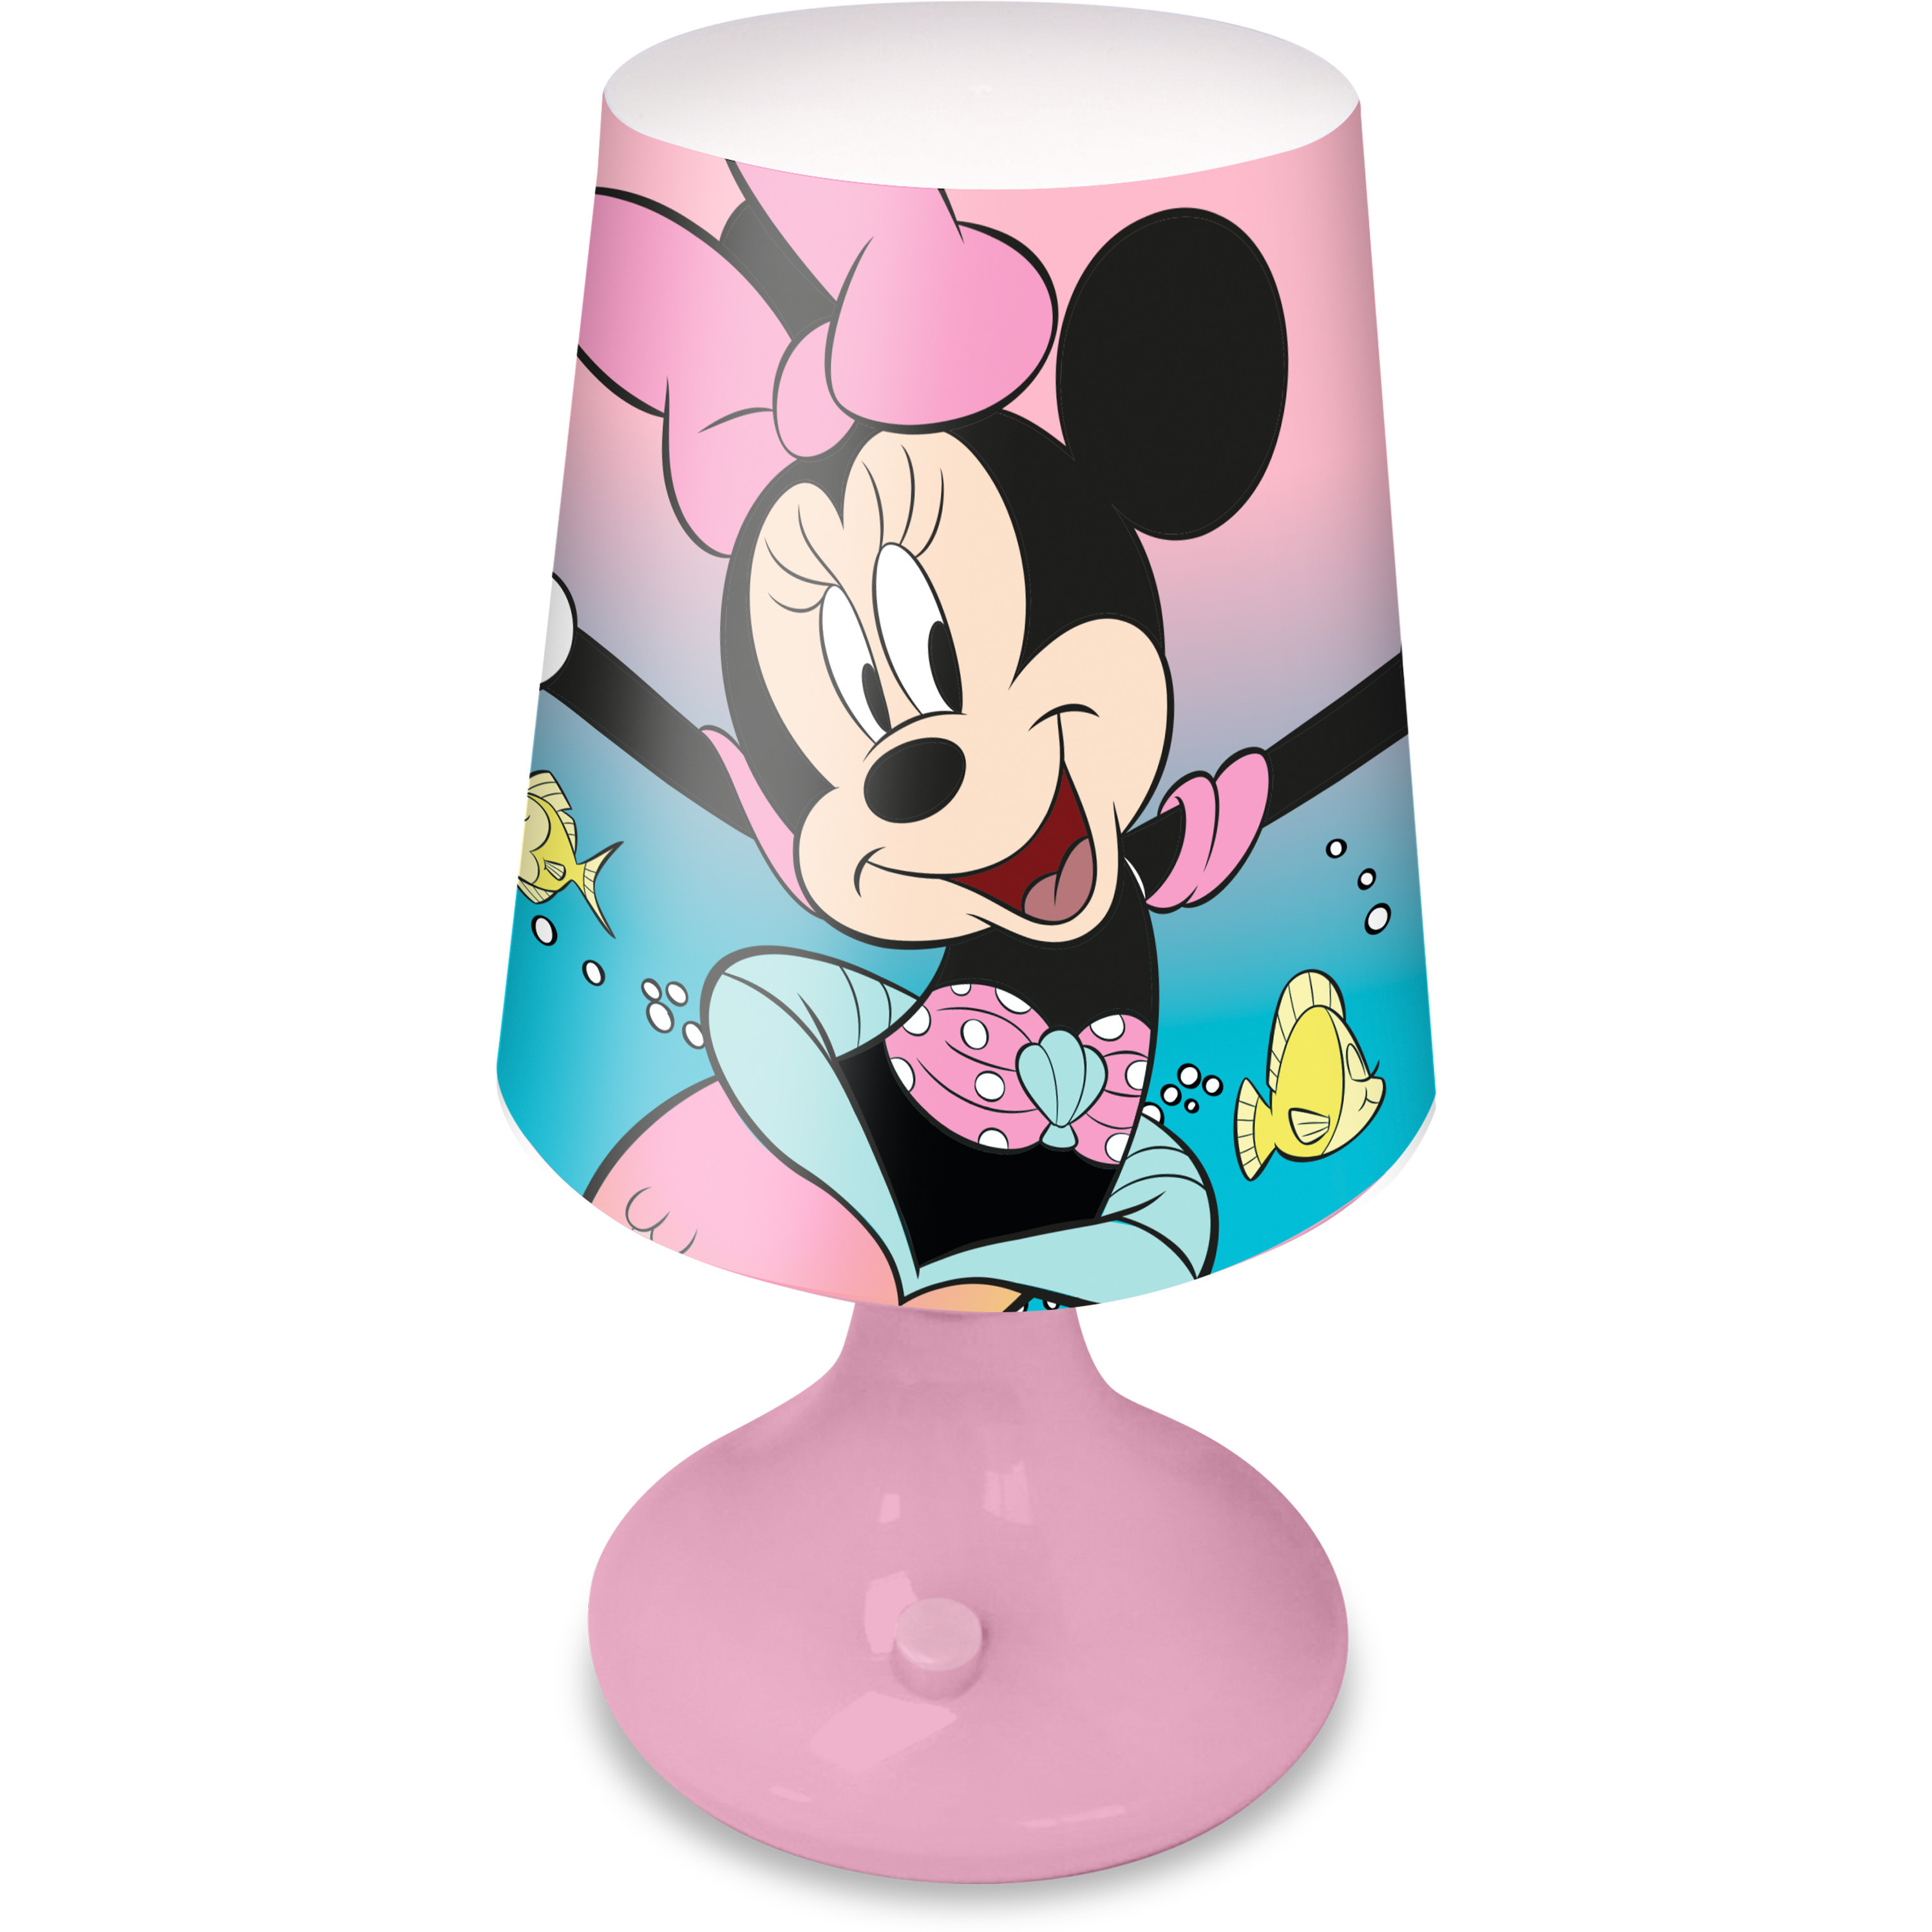 Disney Minnie Mouse tafellamp/bureaulamp/nachtlamp voor kinderen - roze - kunststof - 18 x 9 cm